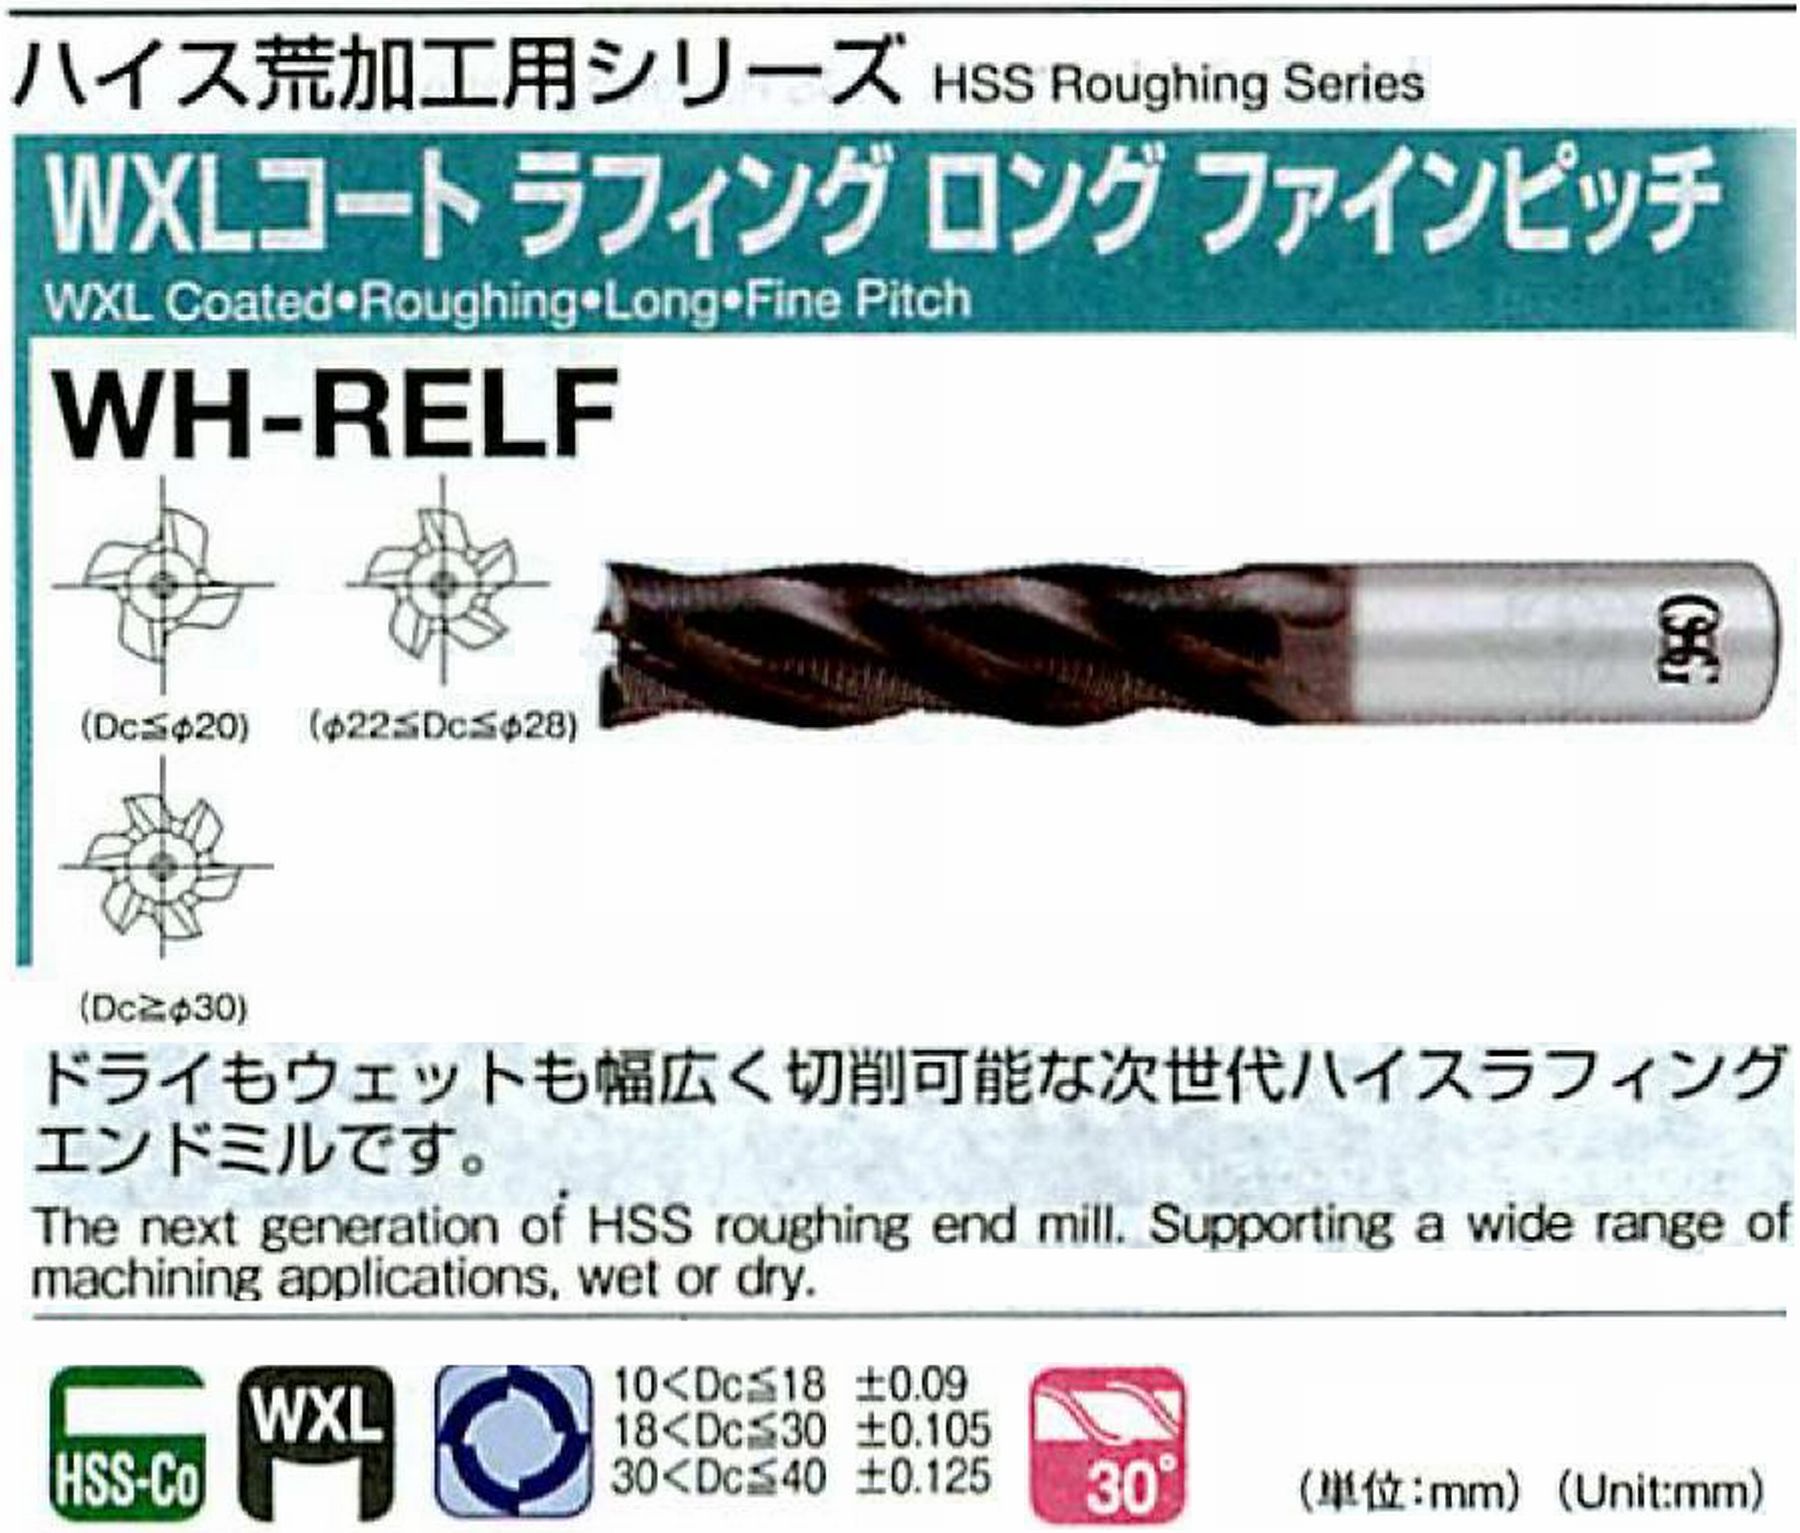 オーエスジー/OSG WXLコートラフィング ロング ファインピッチ WH-RELF 外径30 全長170 刃長90 シャンク径25mm 刃数6